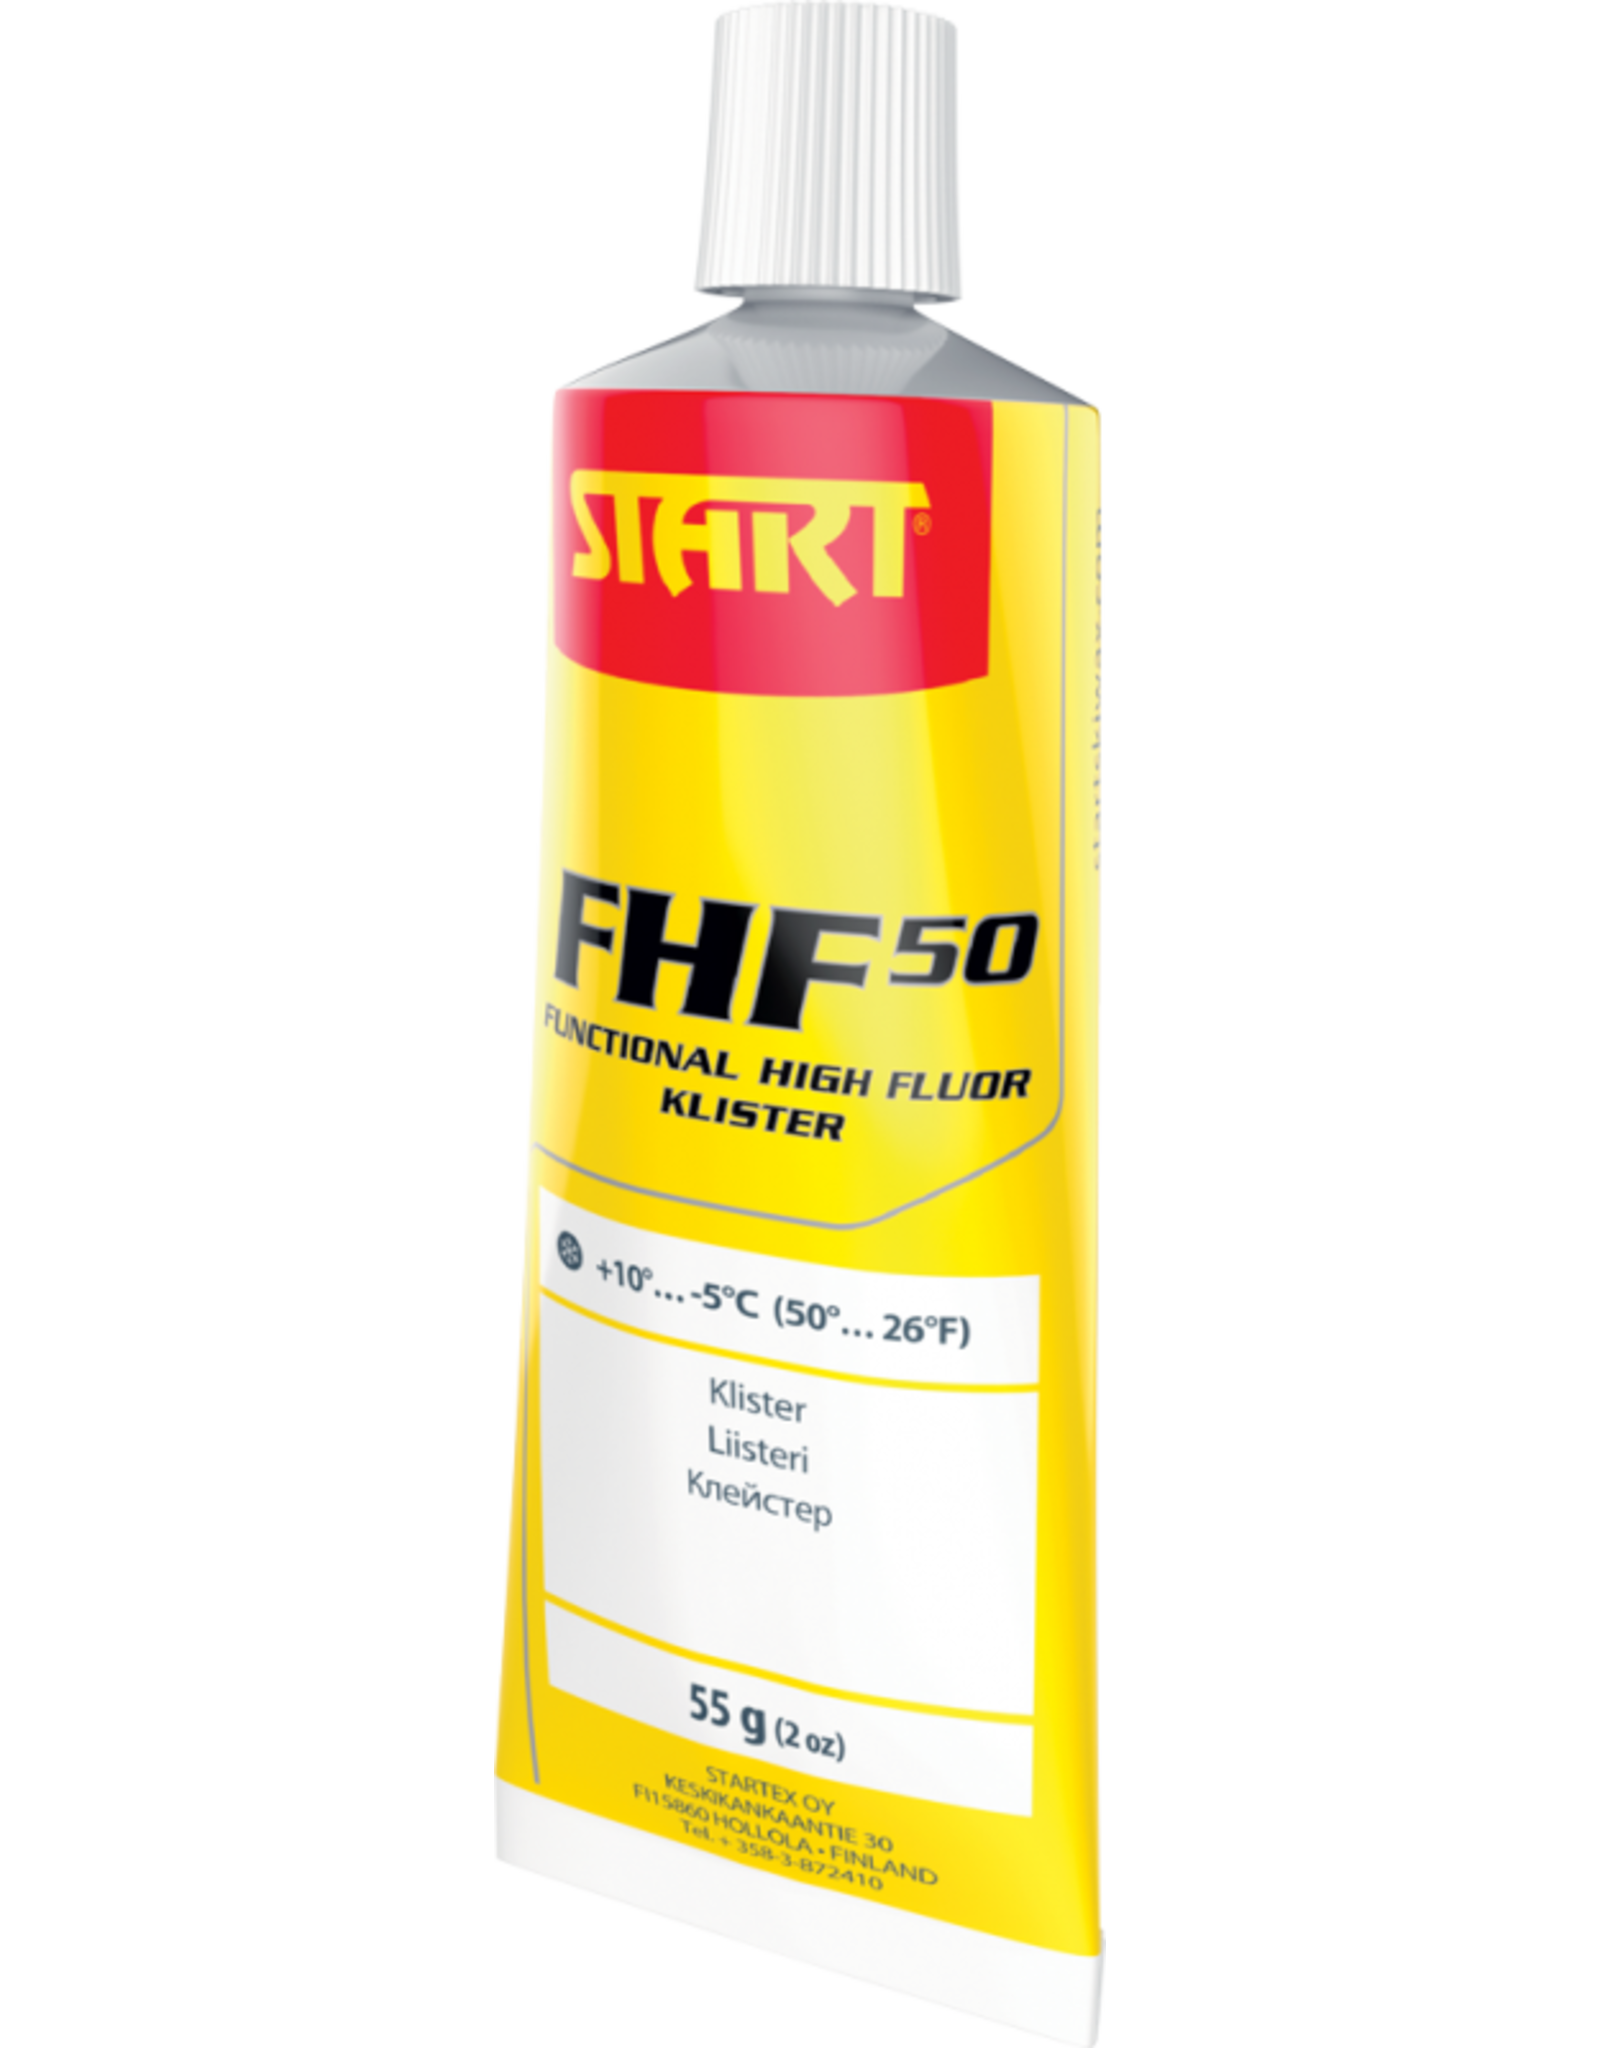 Start Start Klister FHF50 Fluor